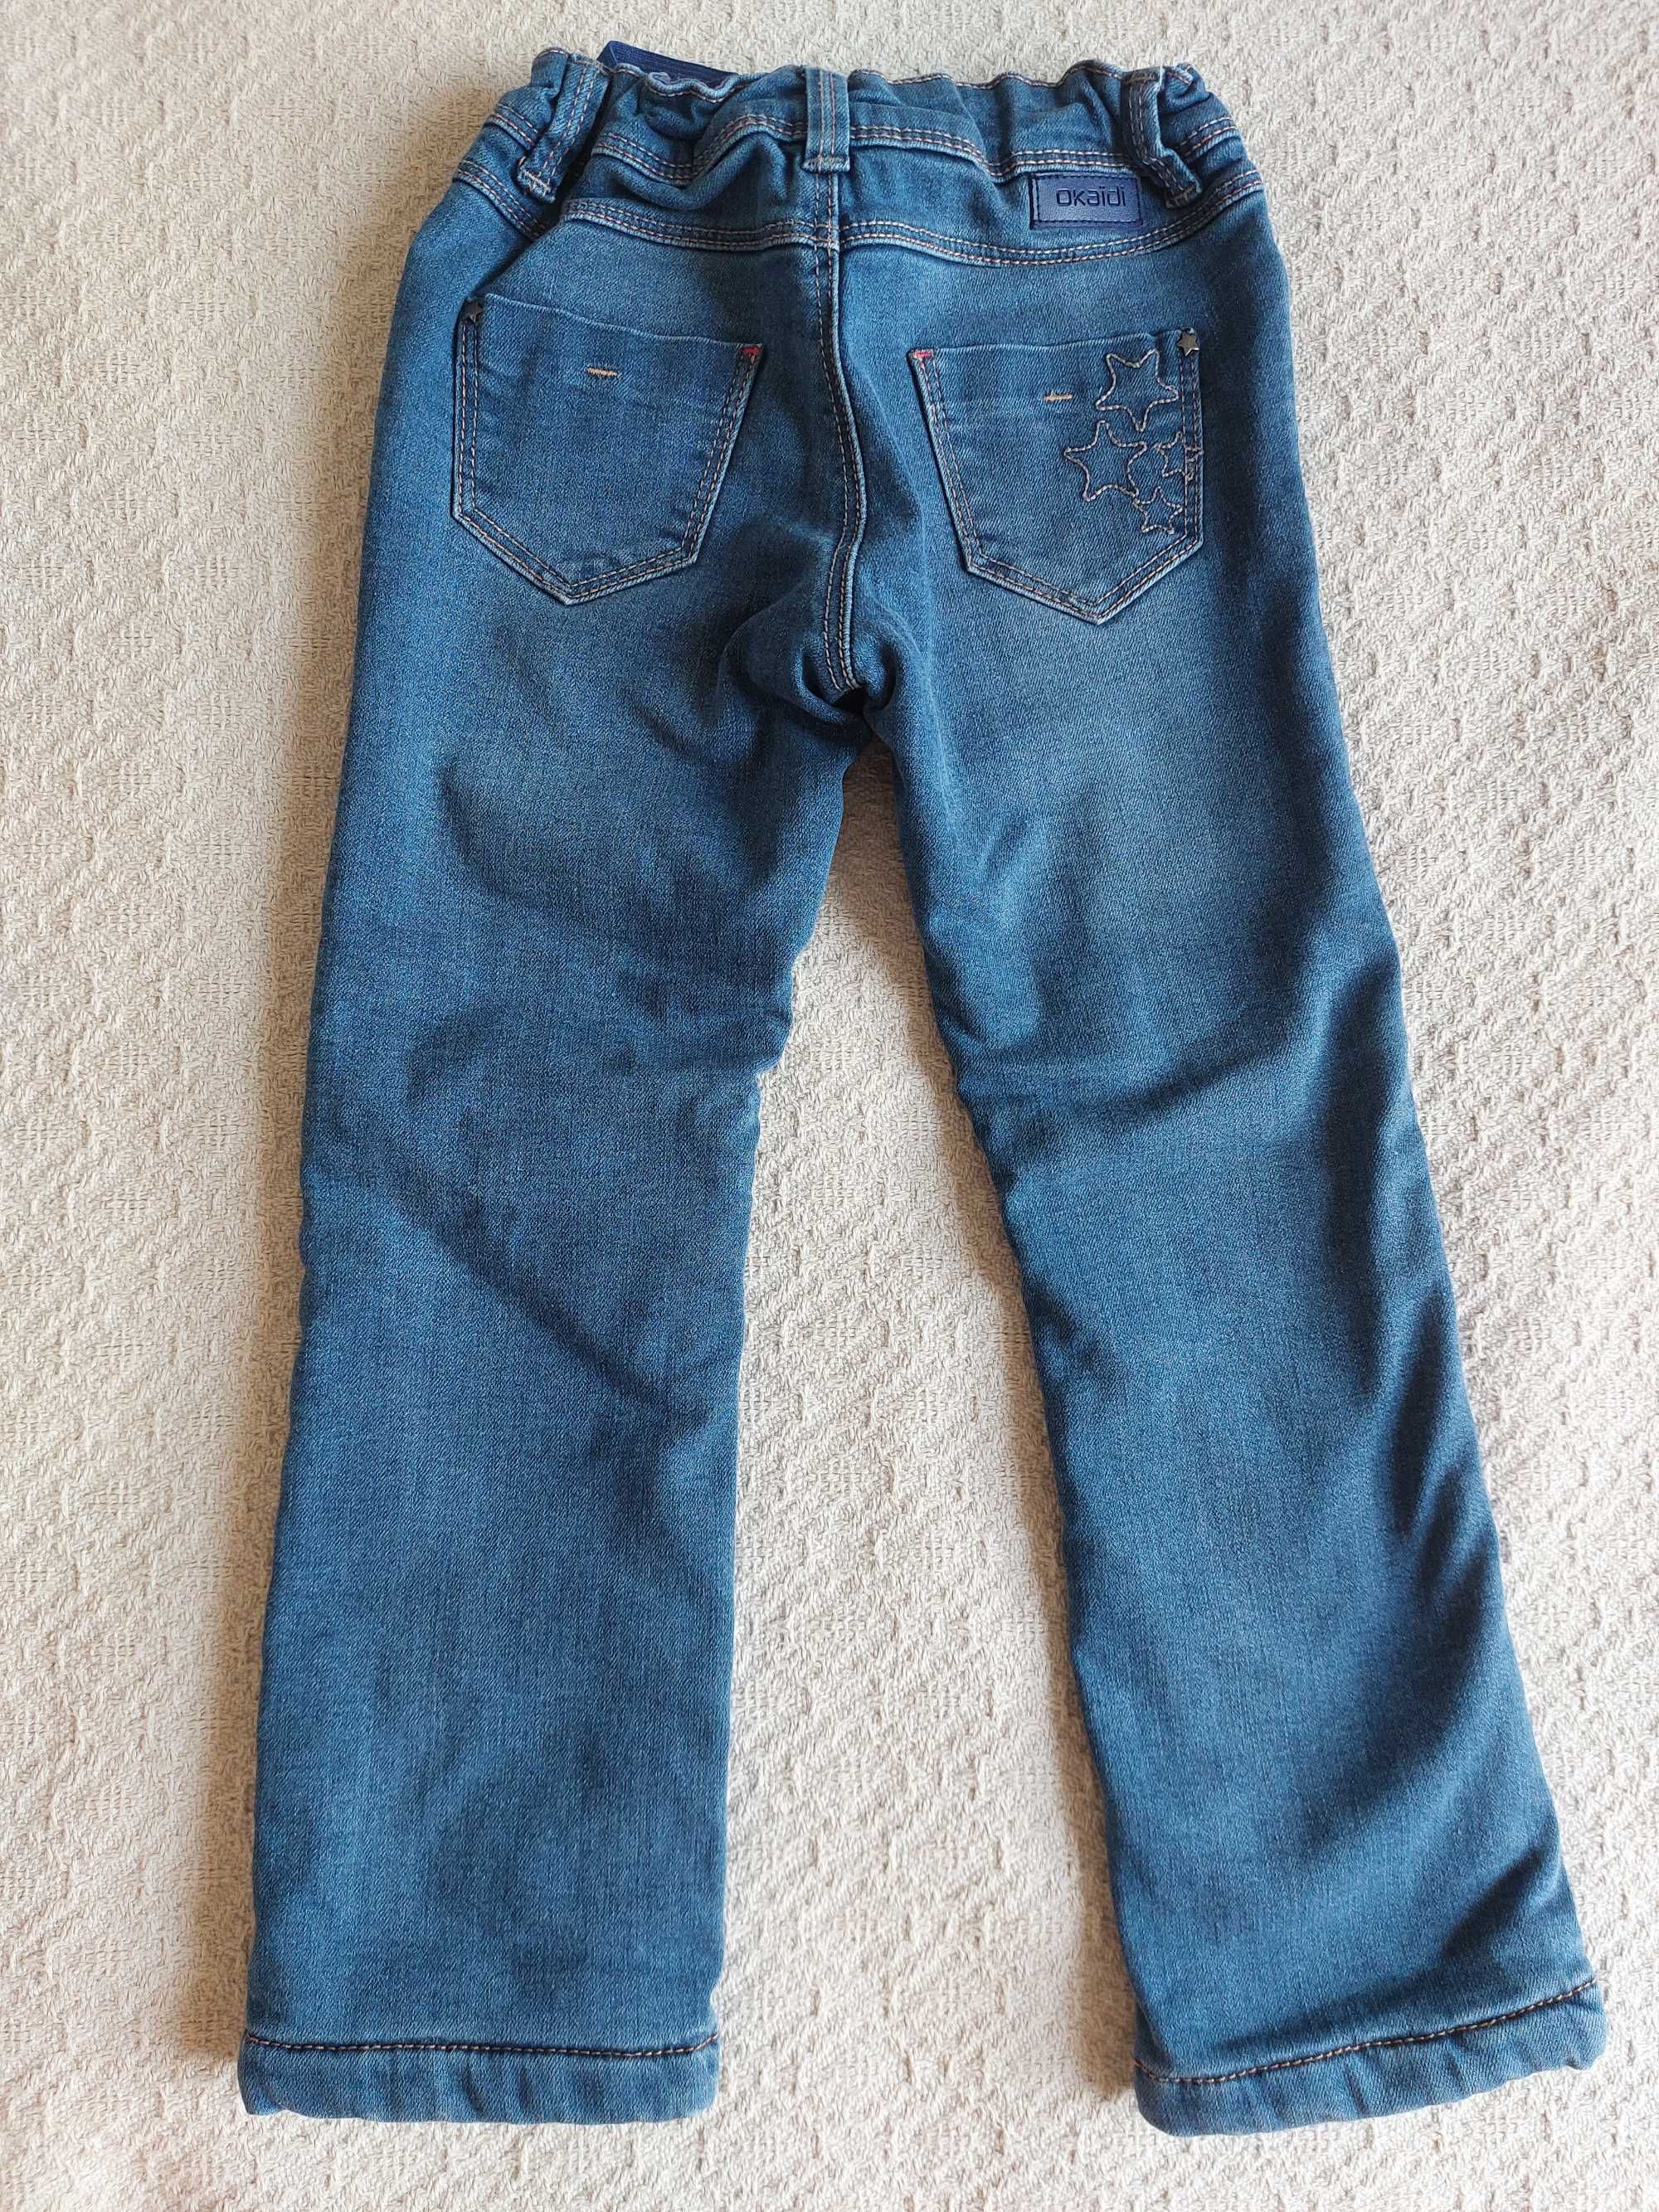 Okaidi spodnie ocieplane polarkiem 104  jeansy w serduszka